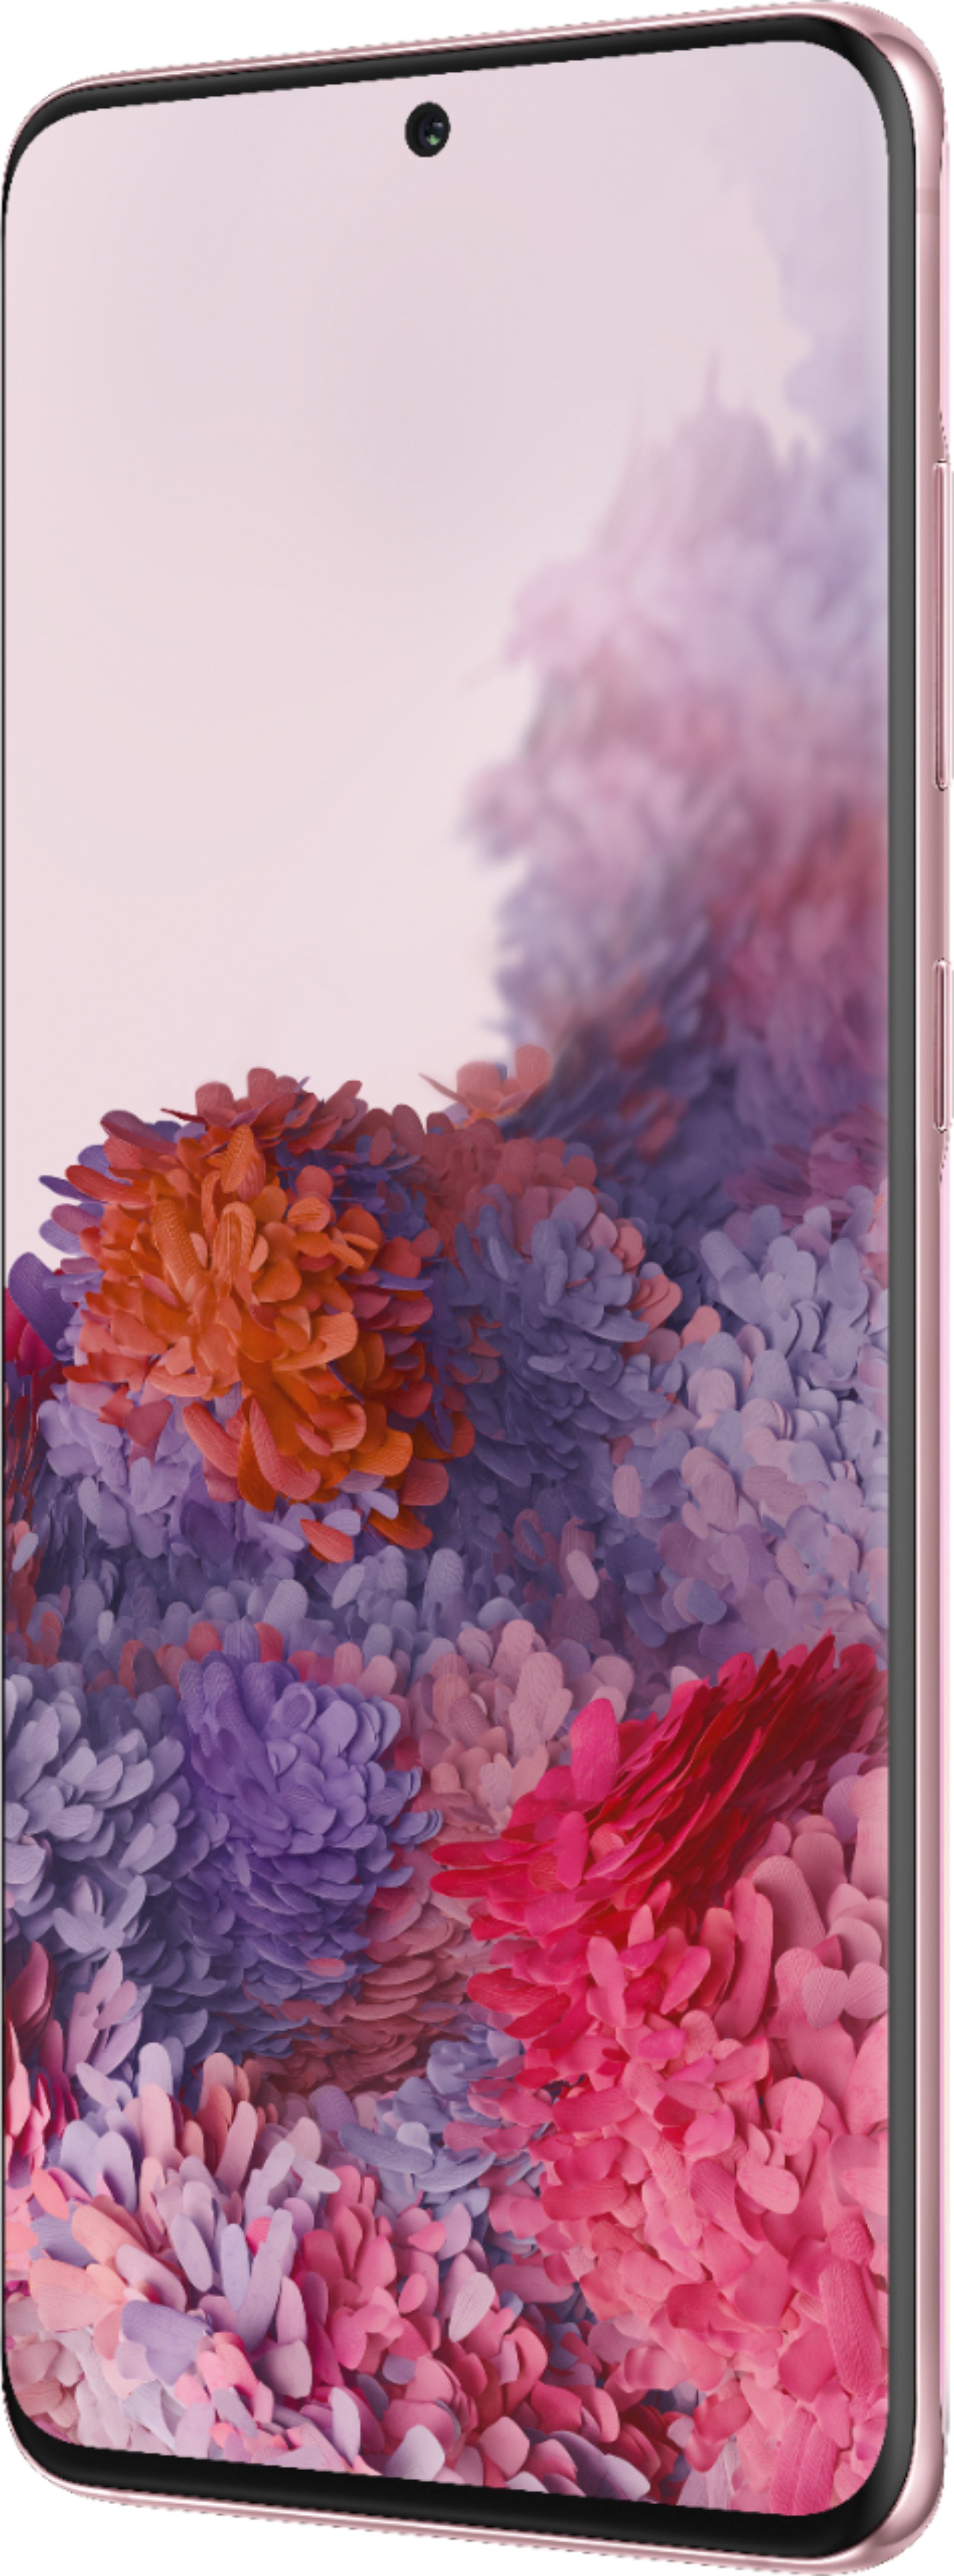 Galaxy S20 FE 5G 128GB (Unlocked) in Orange | Price & Deals | Samsung US